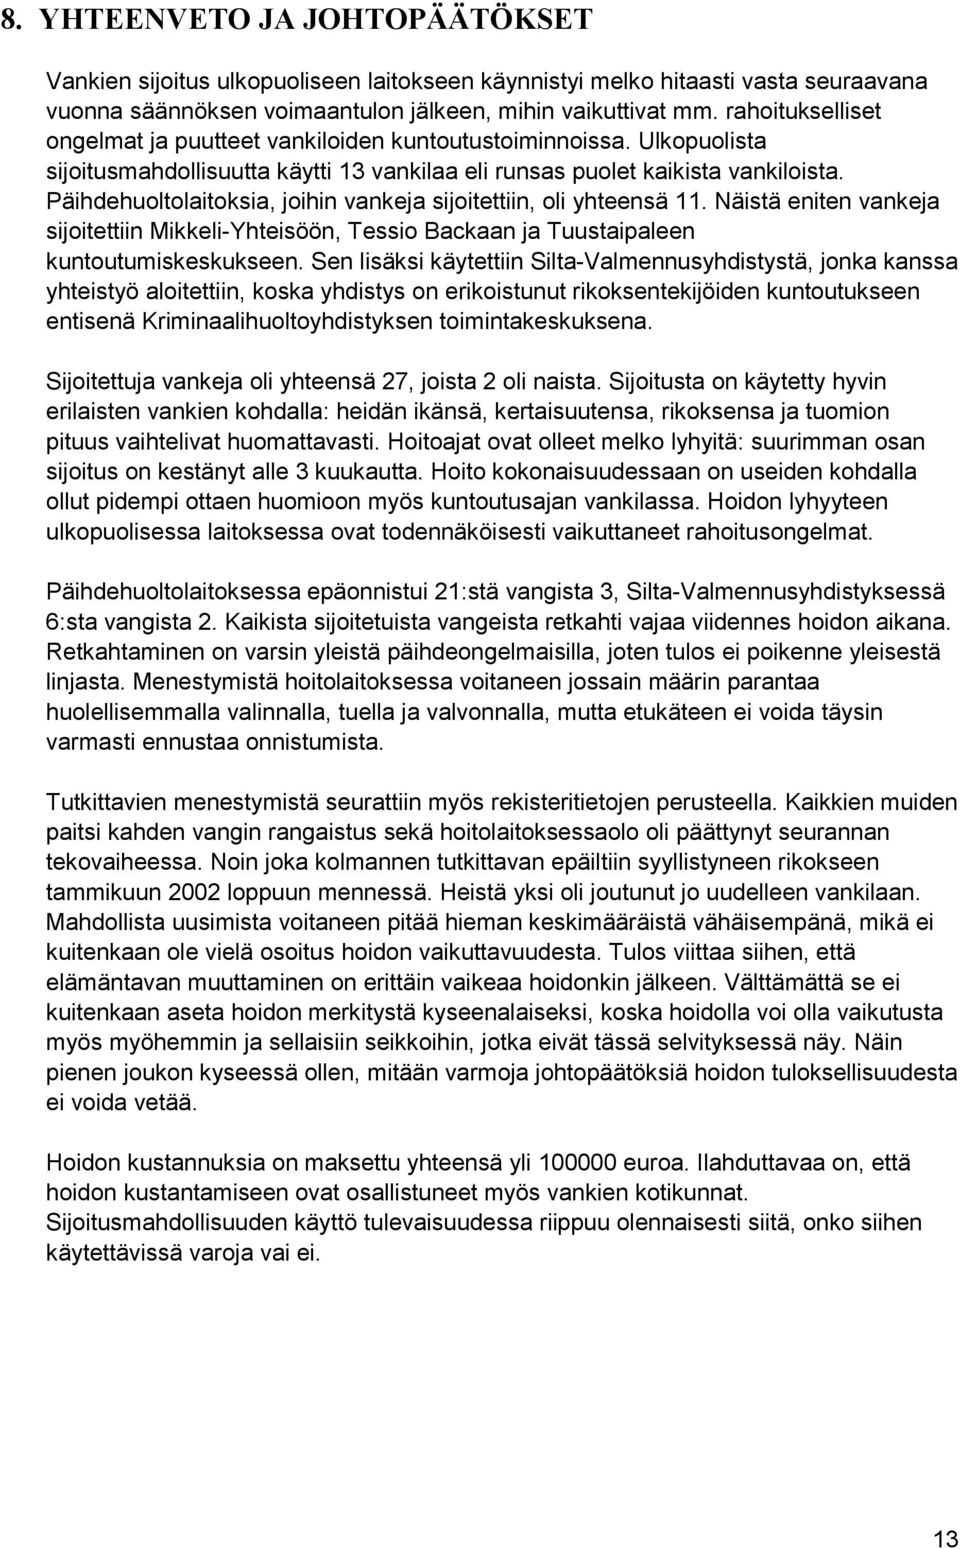 Päihdehuoltolaitoksia, joihin vankeja sijoitettiin, oli yhteensä 11. Näistä eniten vankeja sijoitettiin Mikkeli-Yhteisöön, Tessio Backaan ja Tuustaipaleen kuntoutumiskeskukseen.